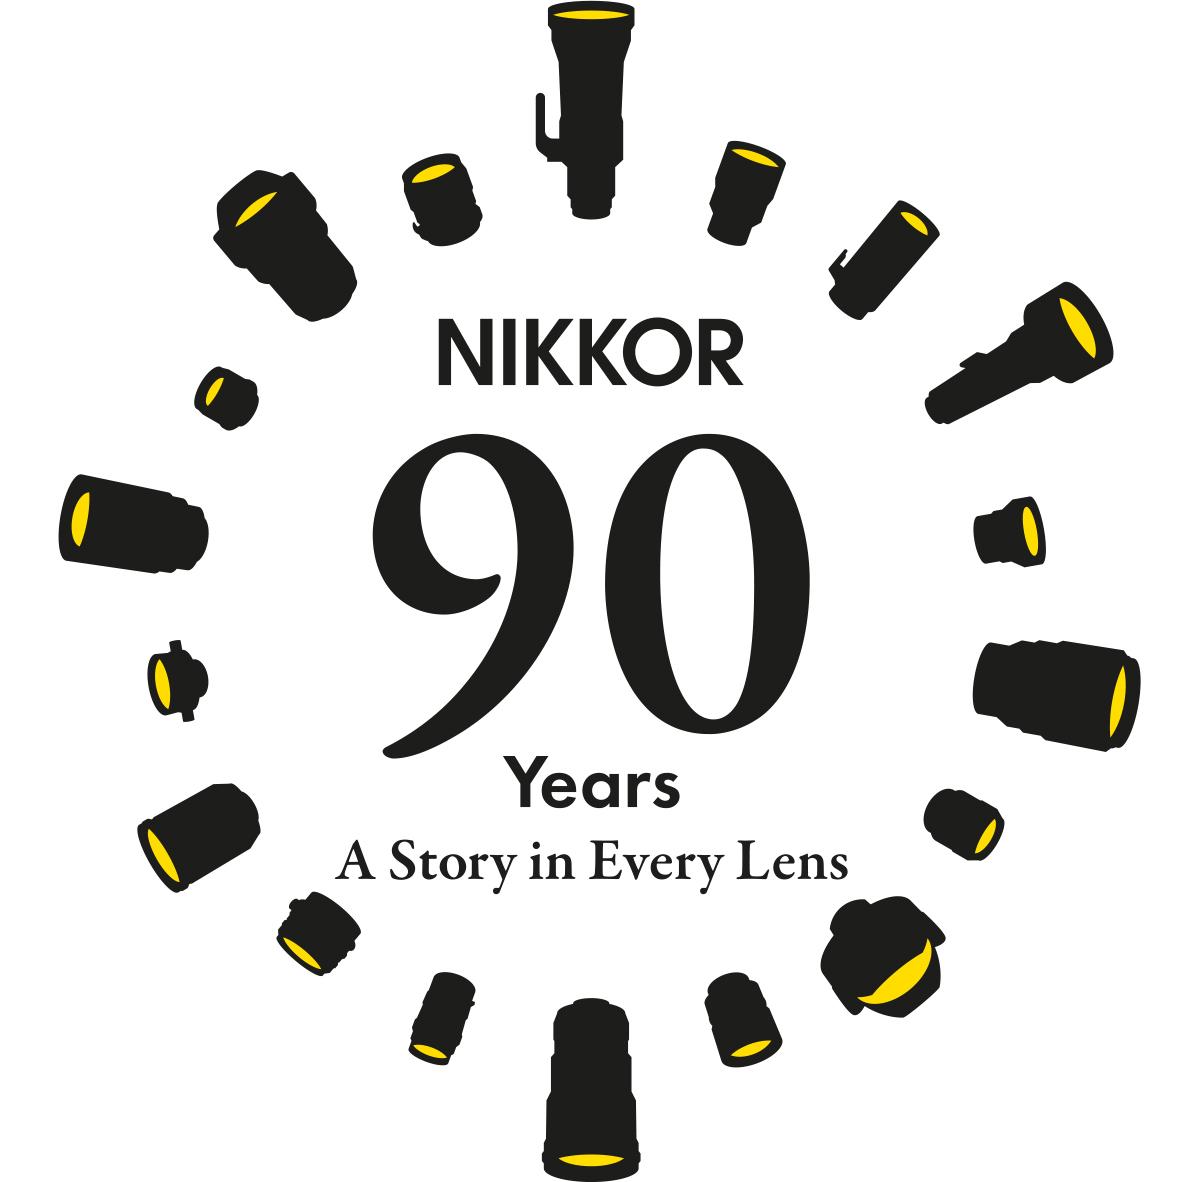 Nikon90Jahre_Nikkor